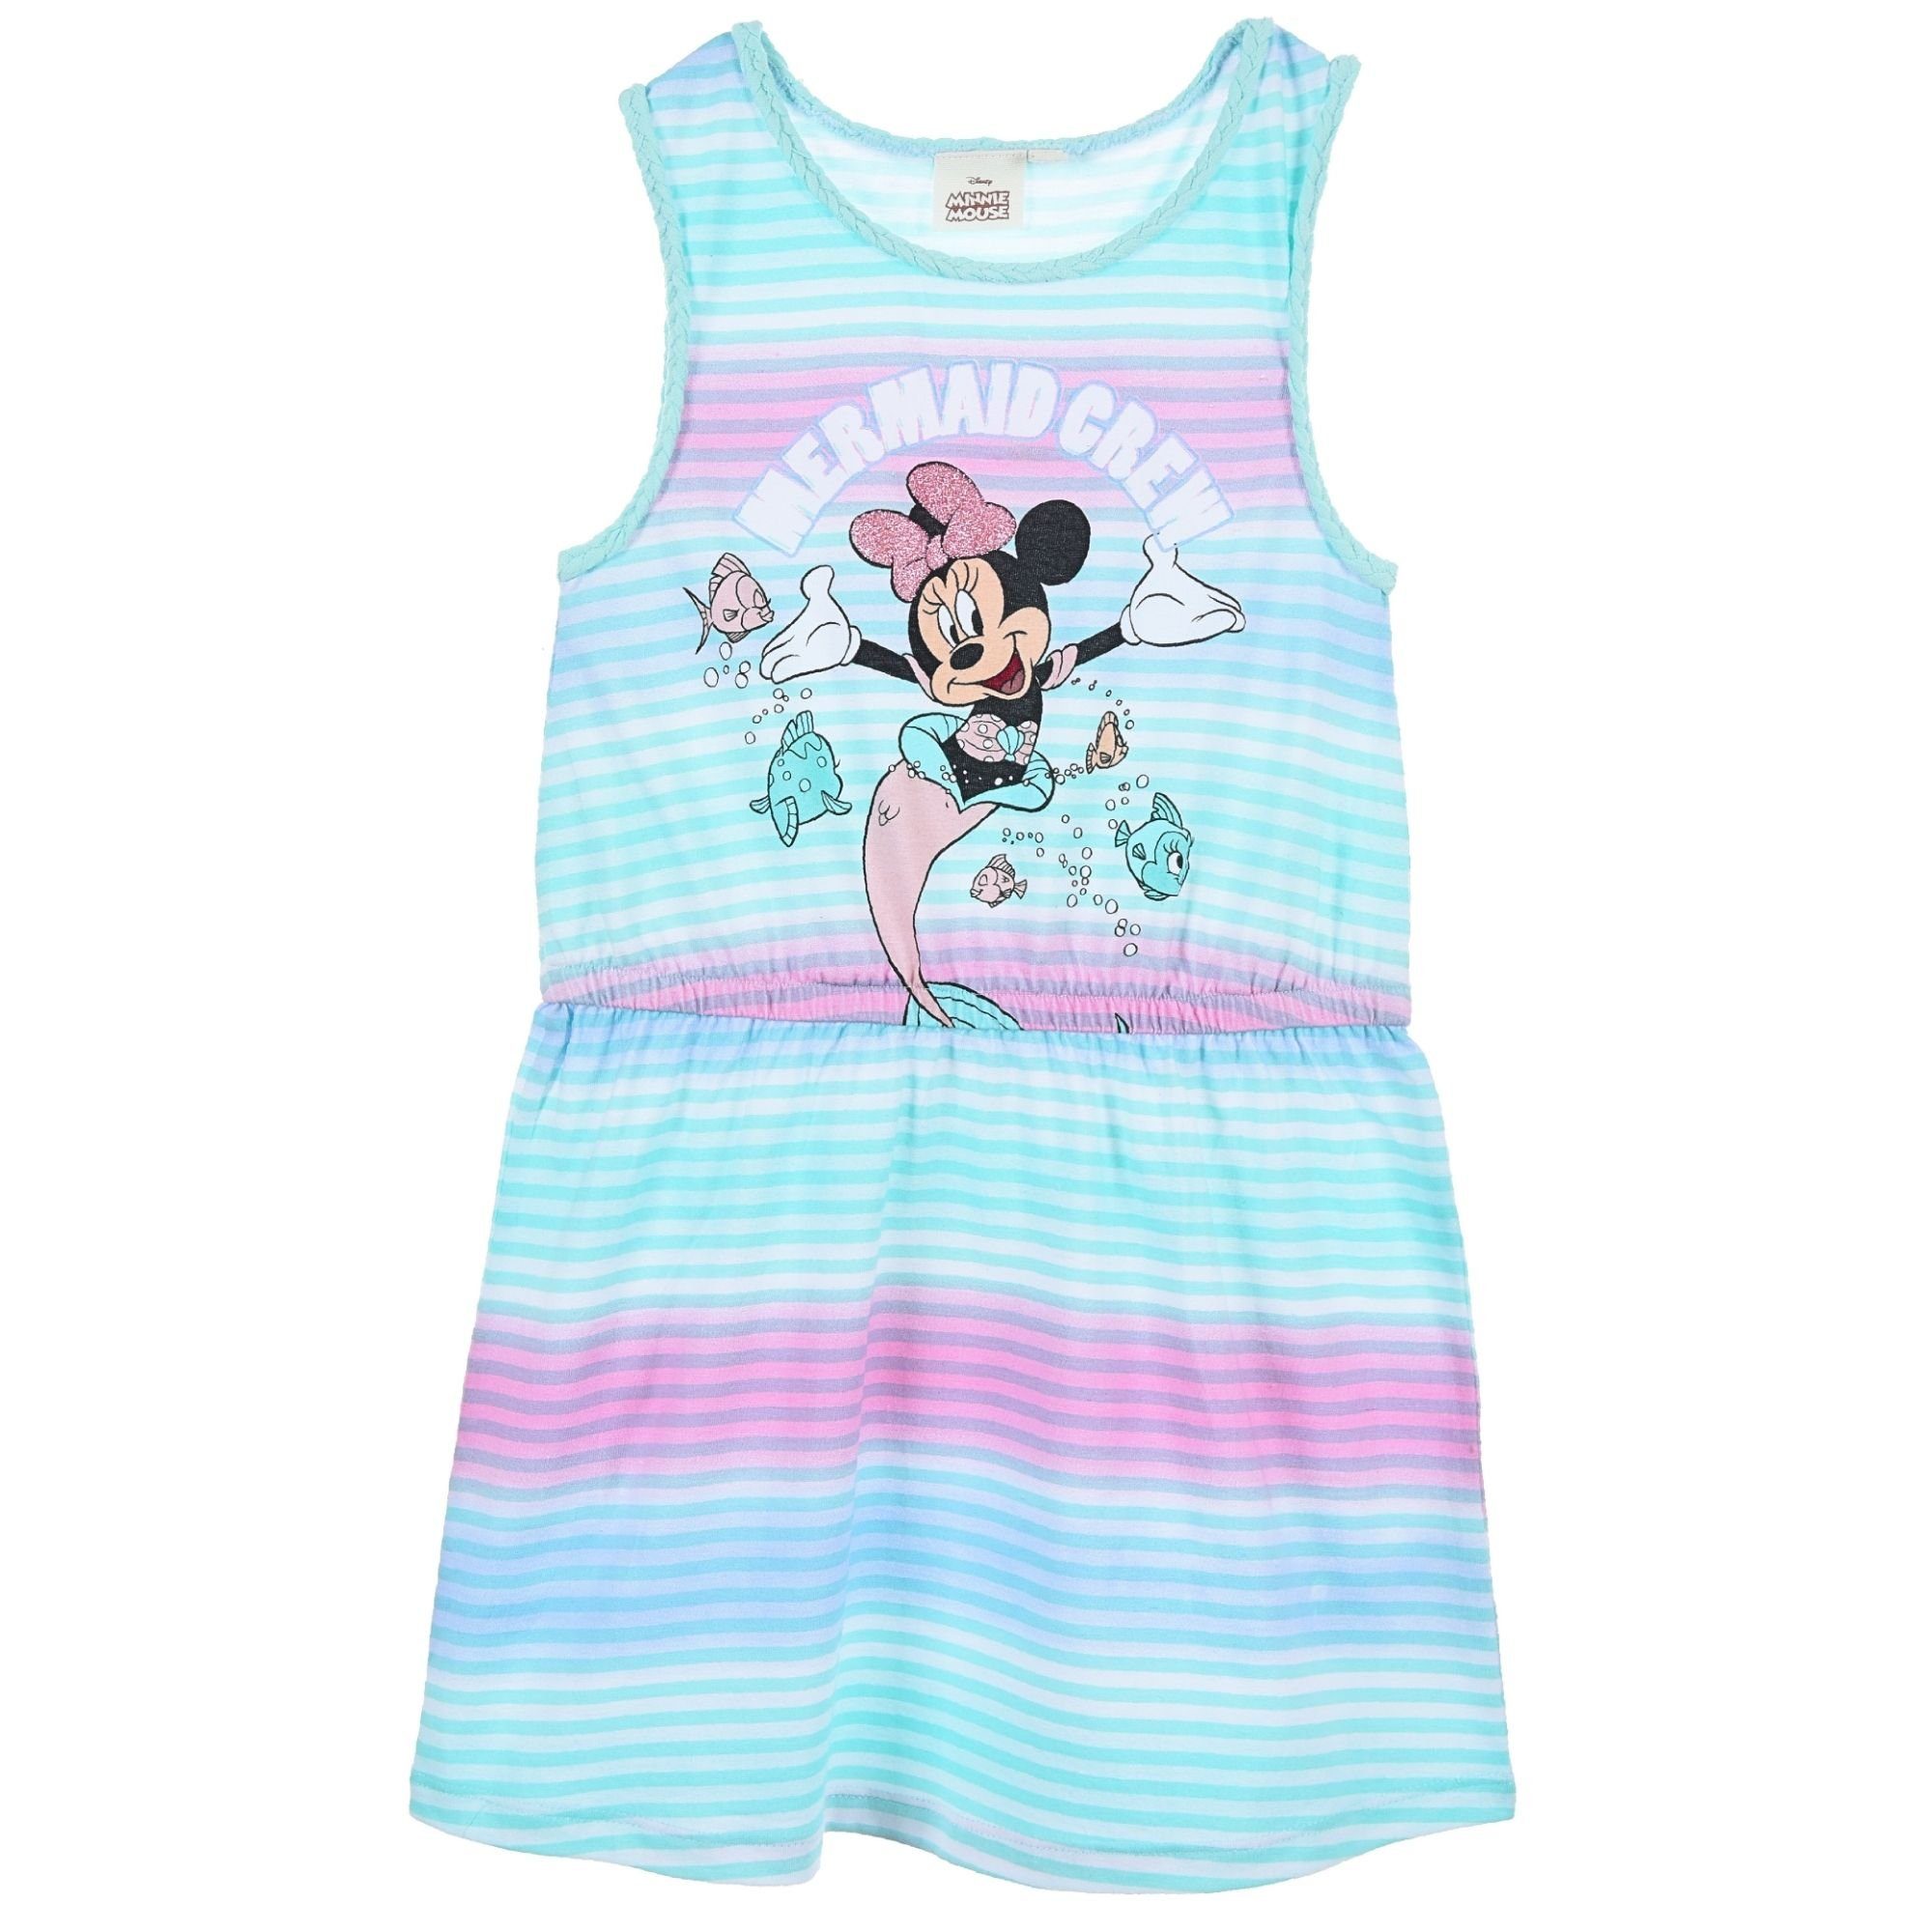 Sommerkleid Mädchen Crew Jerseykleid 98-128 Mouse Disney Minnie Gr. Mermaid Minnie Türkis Maus- cm